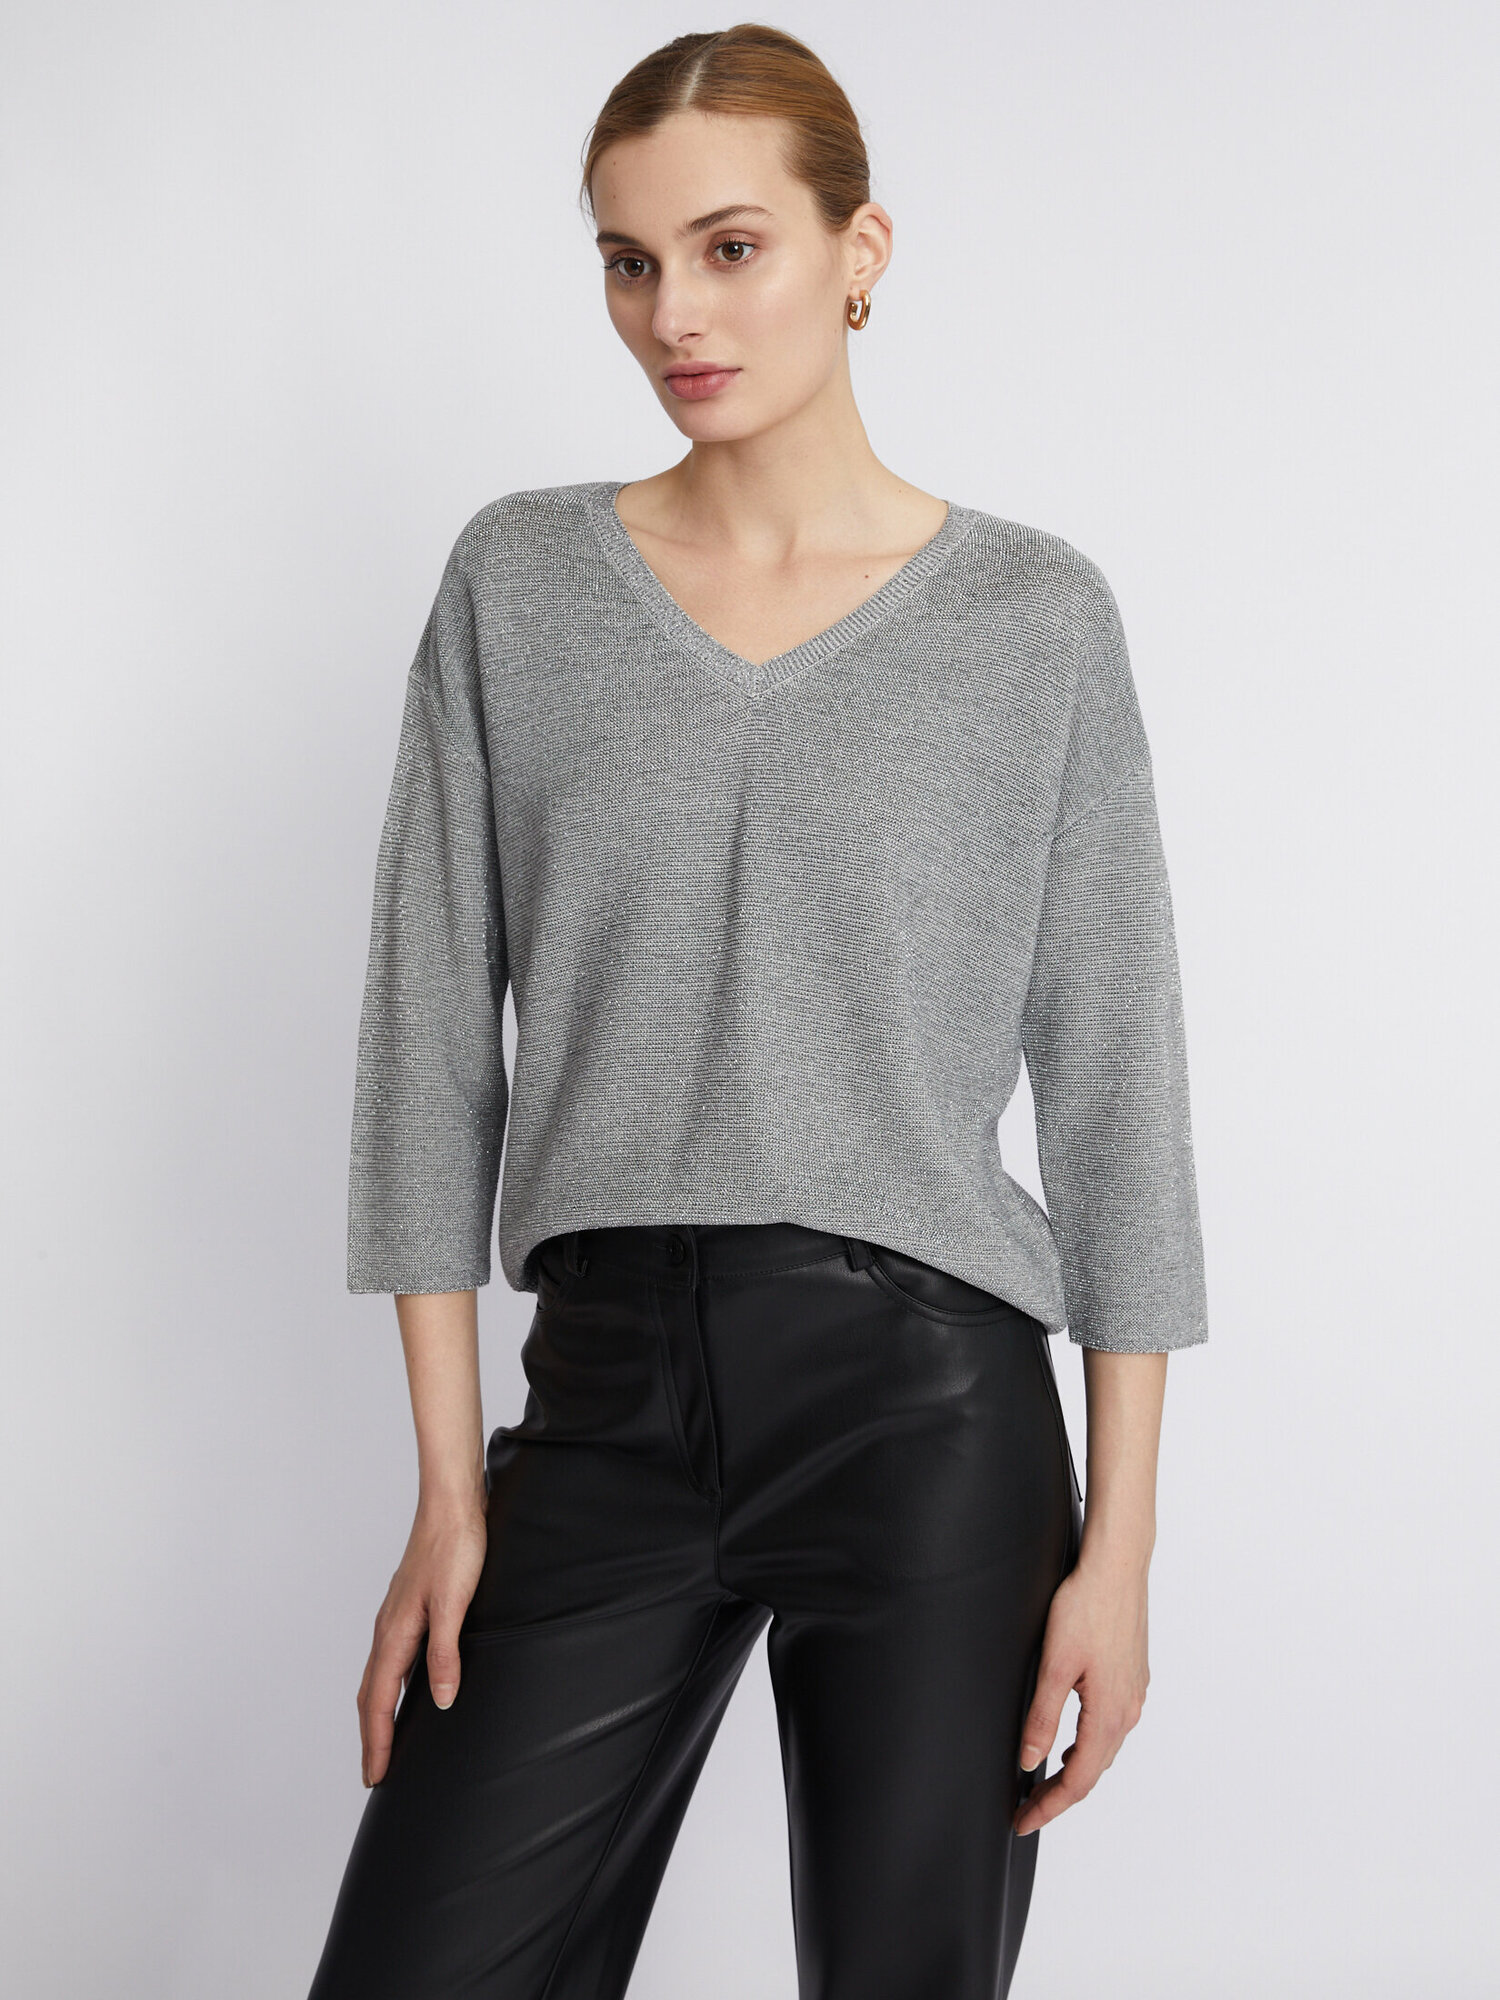 Тонкий вязаный пуловер с треугольным вырезом и люрексом цвет Светло-серый размер L